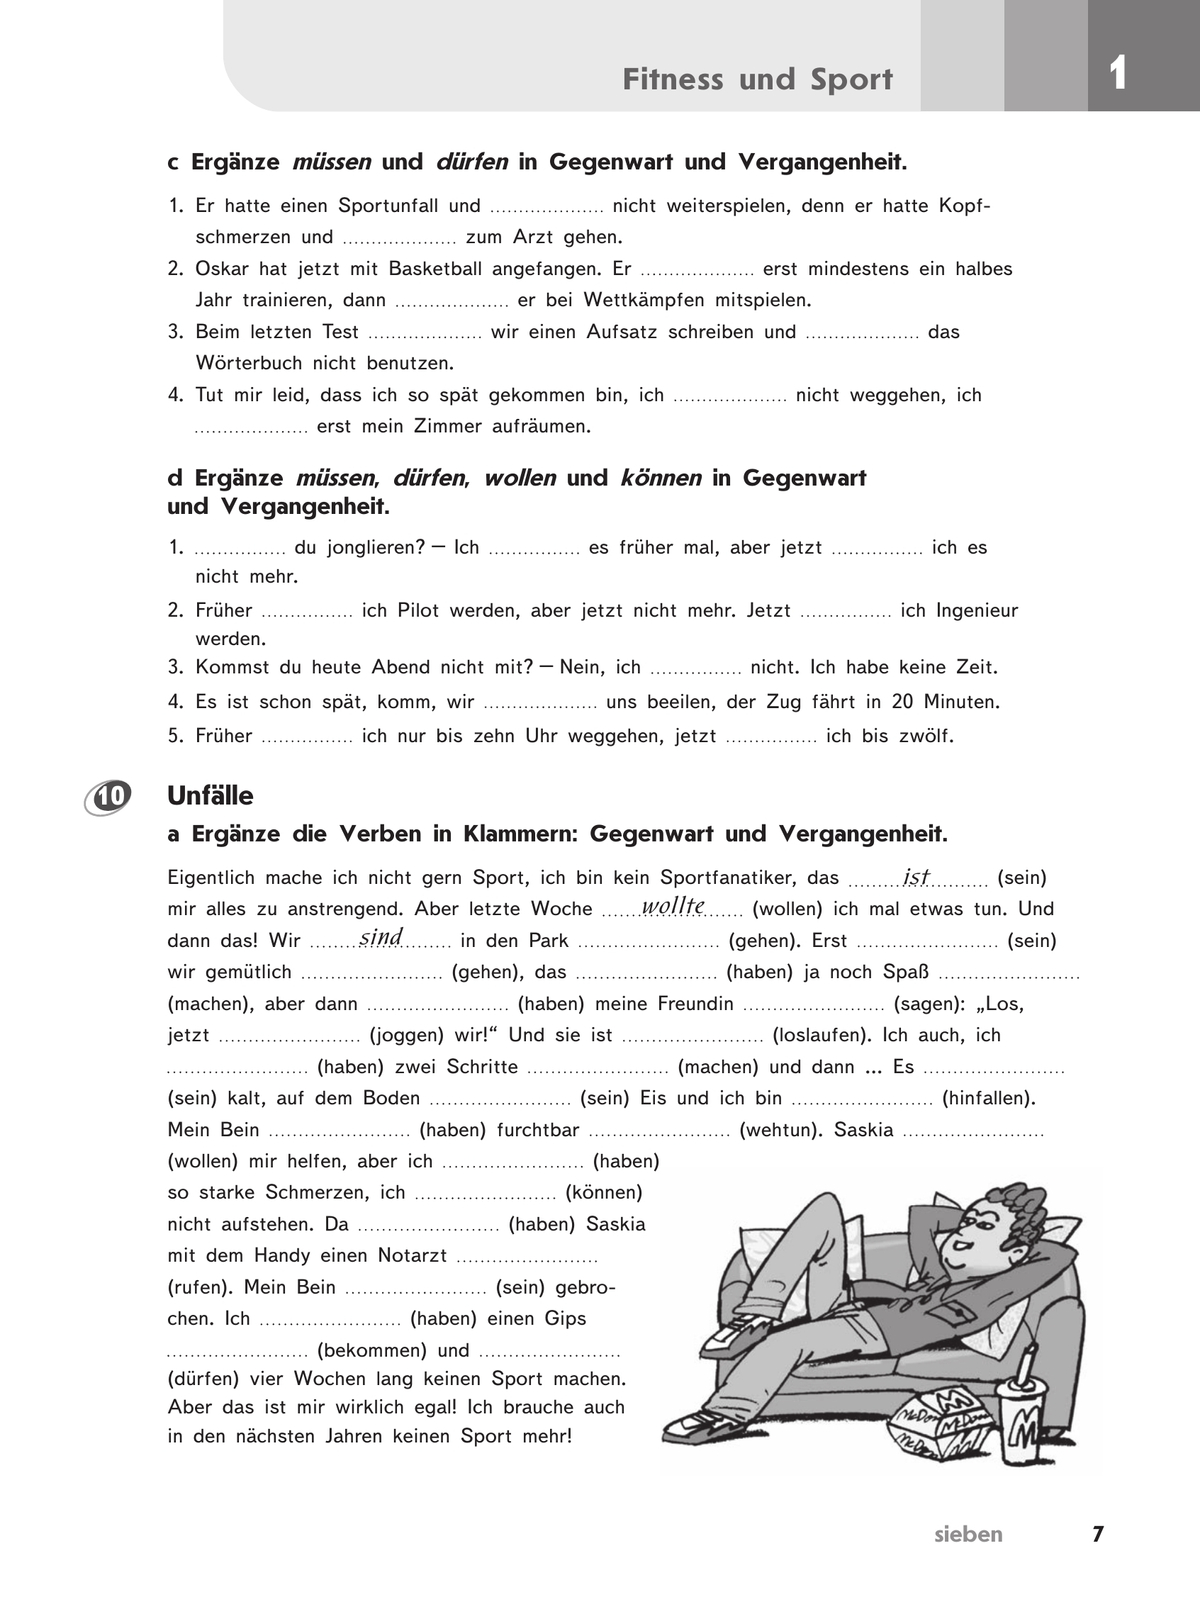 Немецкий язык. Второй иностранный язык. Рабочая тетрадь. 8 класс 6